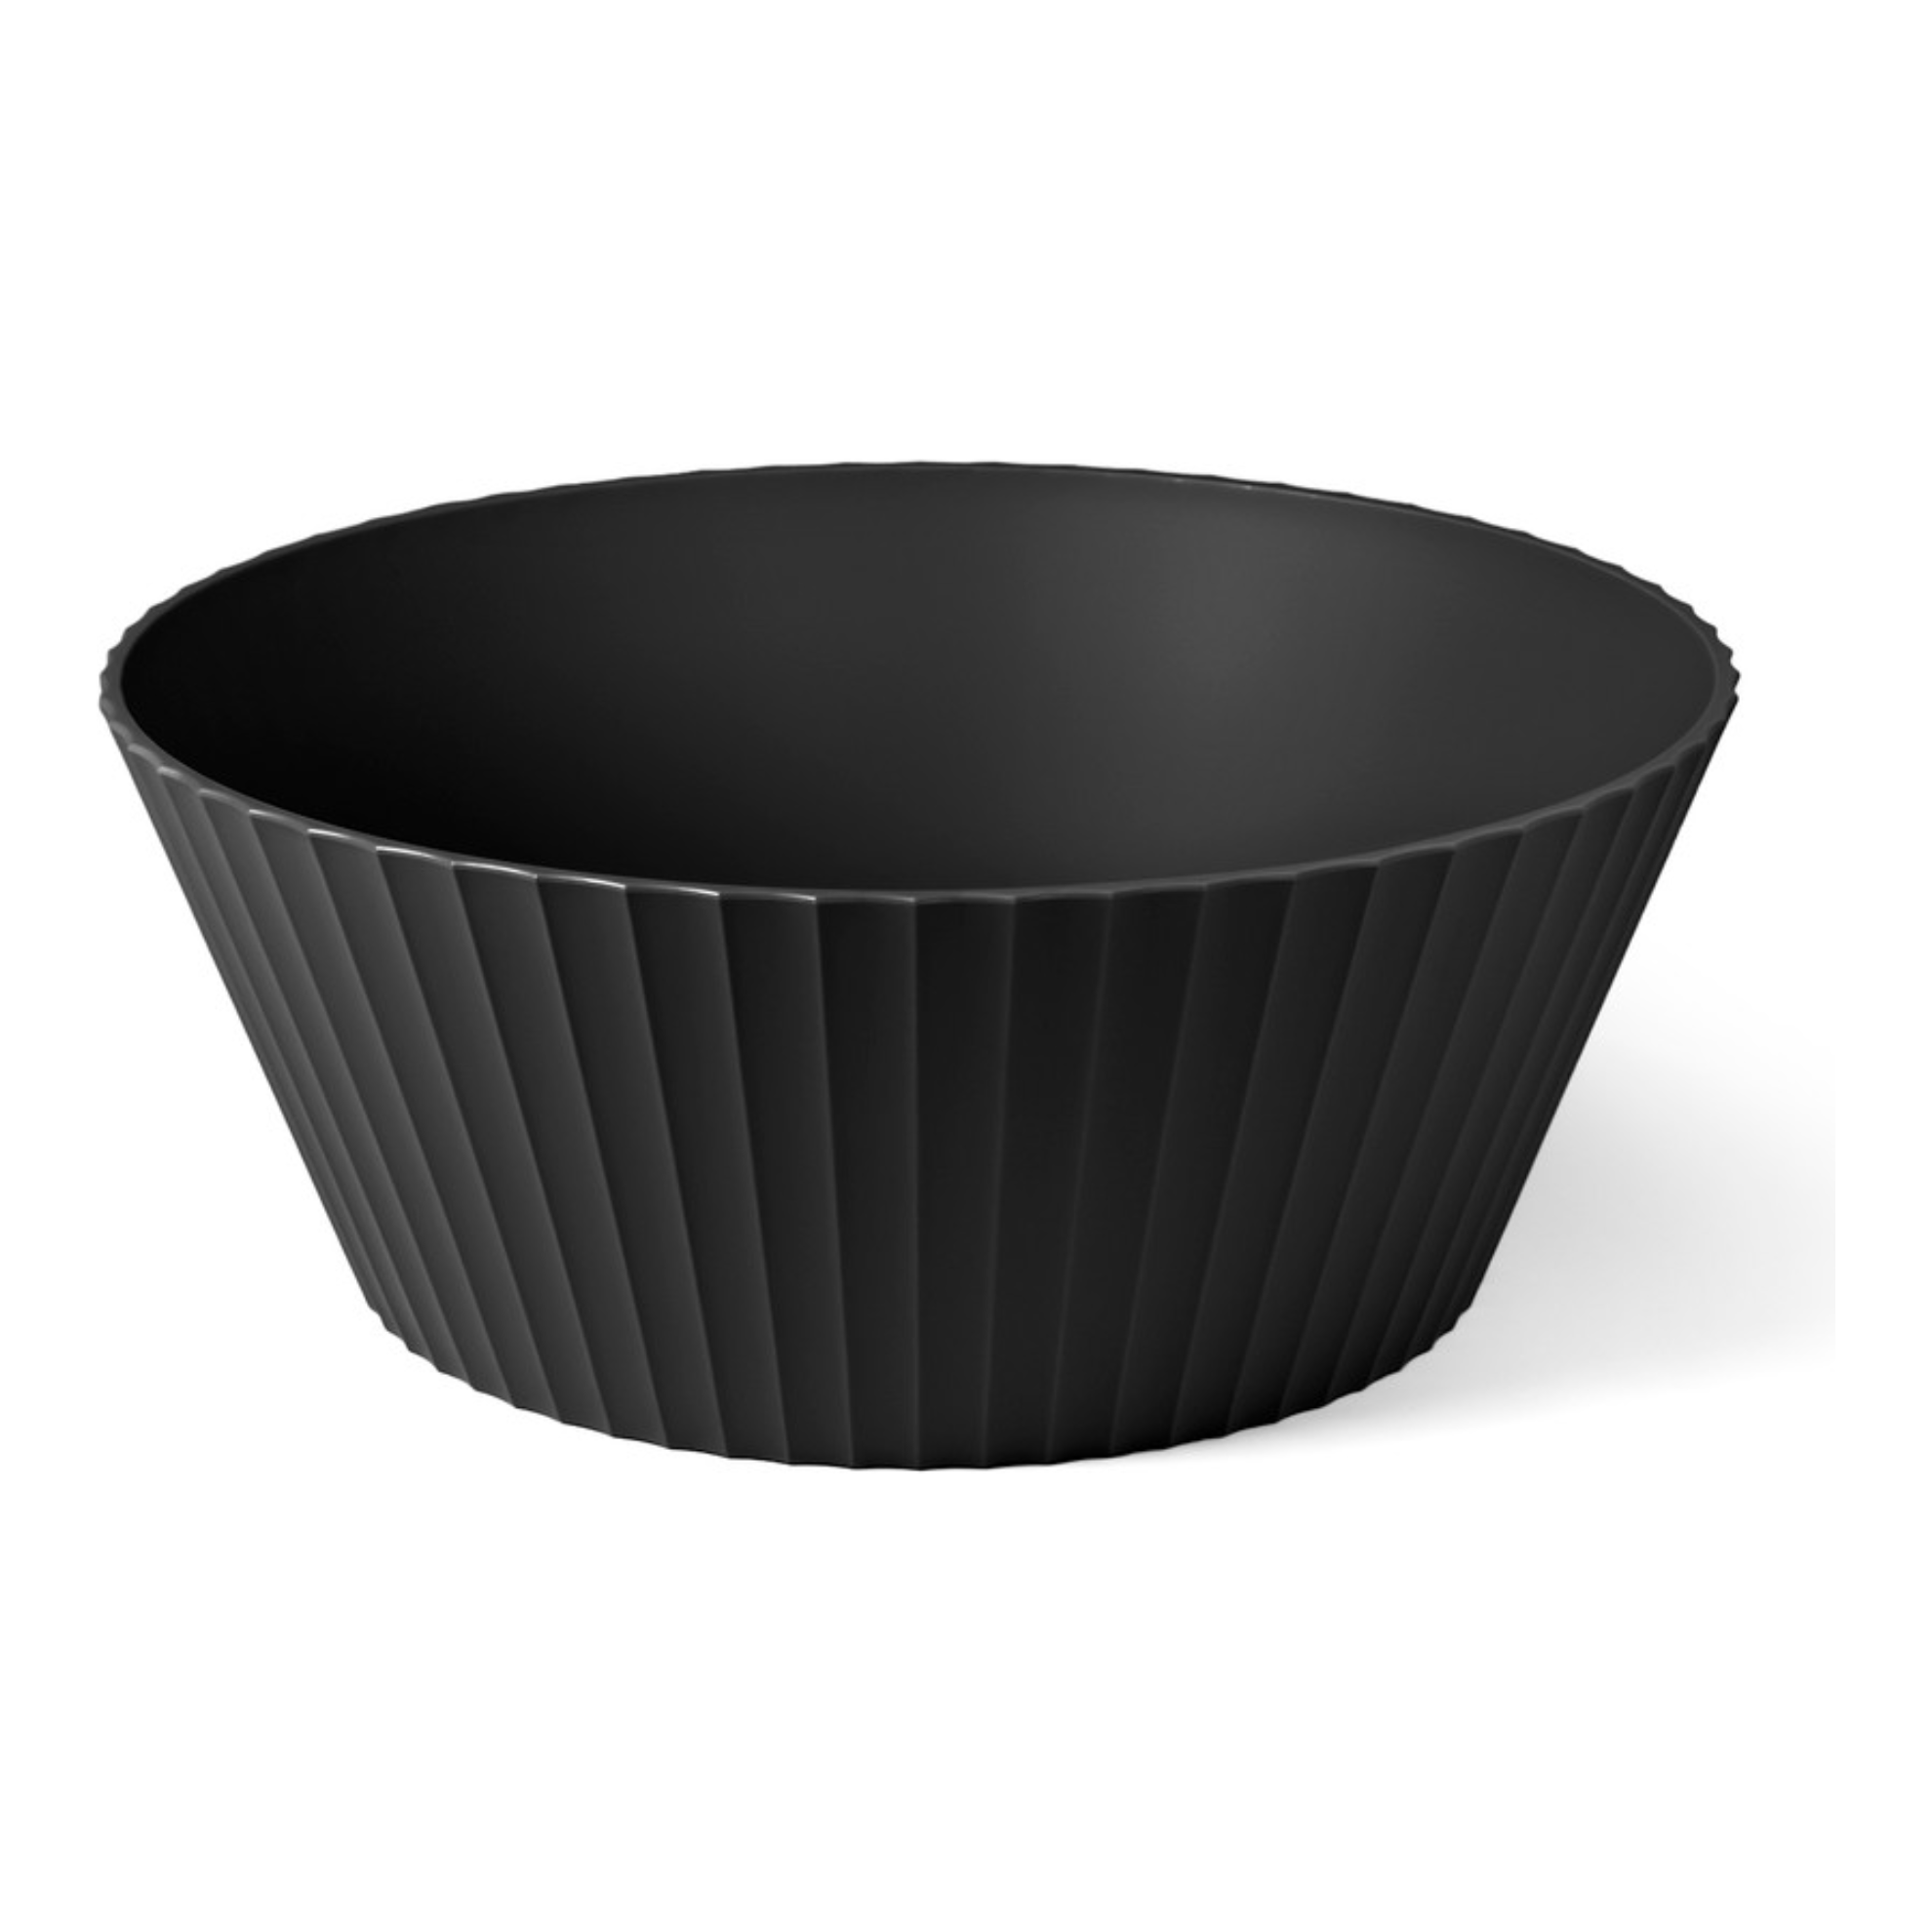 Blim Plus Nettuno Bowl Extra Large Carbon Black